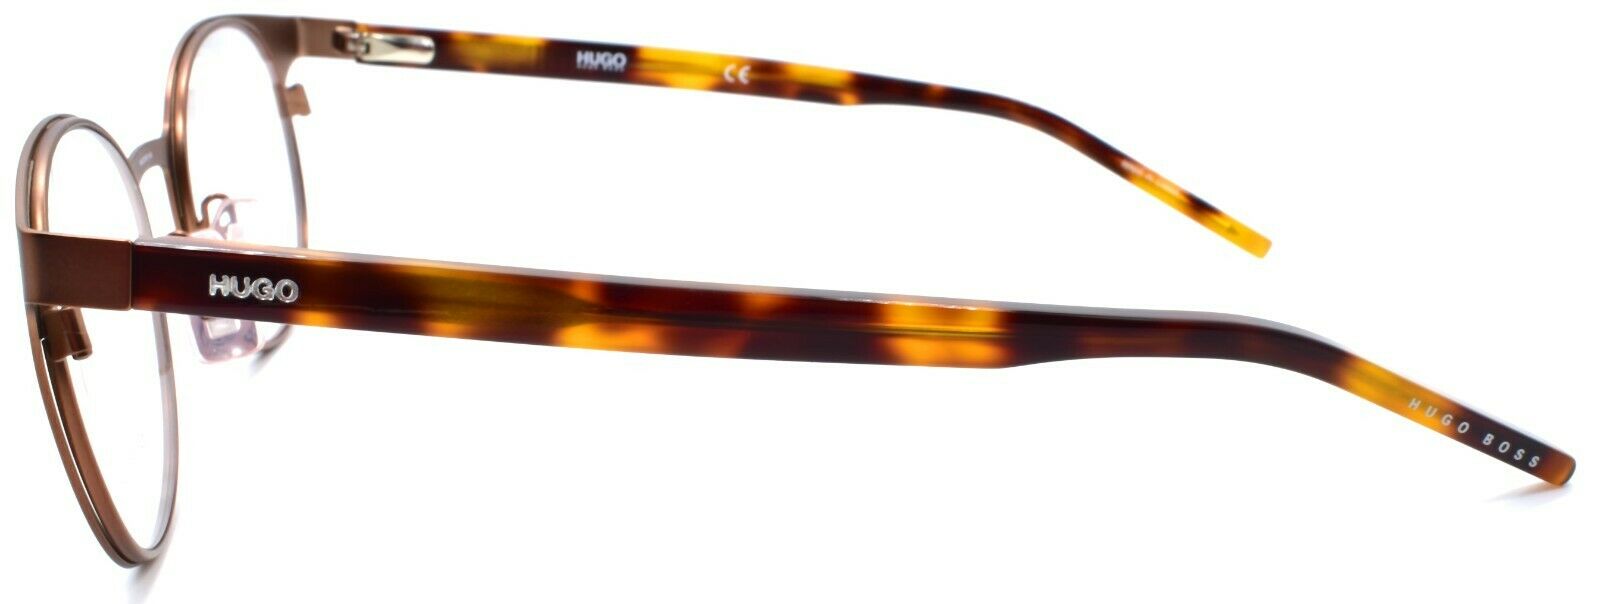 3-Hugo by Hugo Boss HG 1042 4IN Women's Eyeglasses Frames 49-20-140 Matte Brown-716736137445-IKSpecs